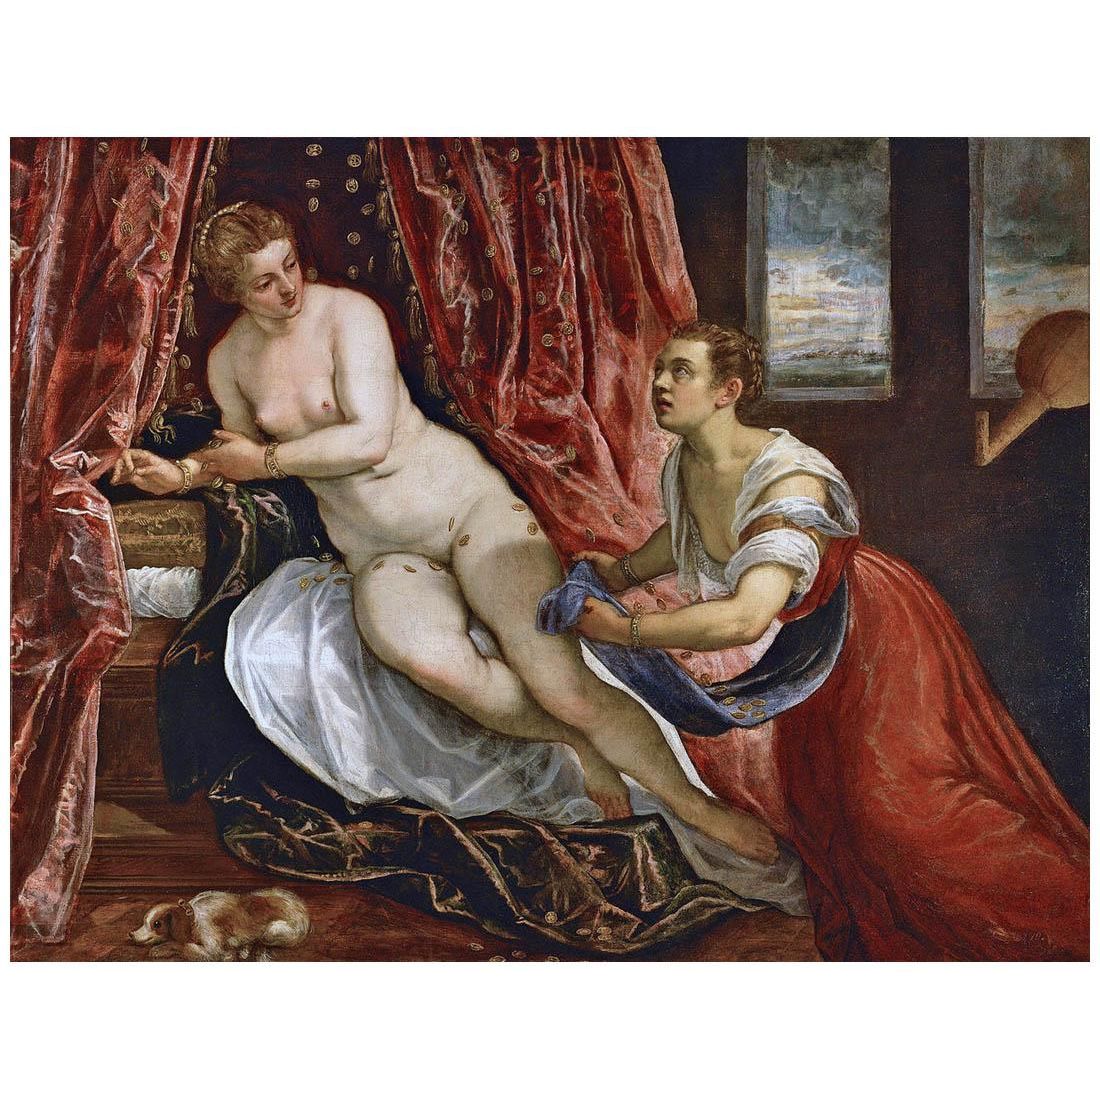 Tintoretto. Danae. 1570. Musee des Beaux arts de Lyon